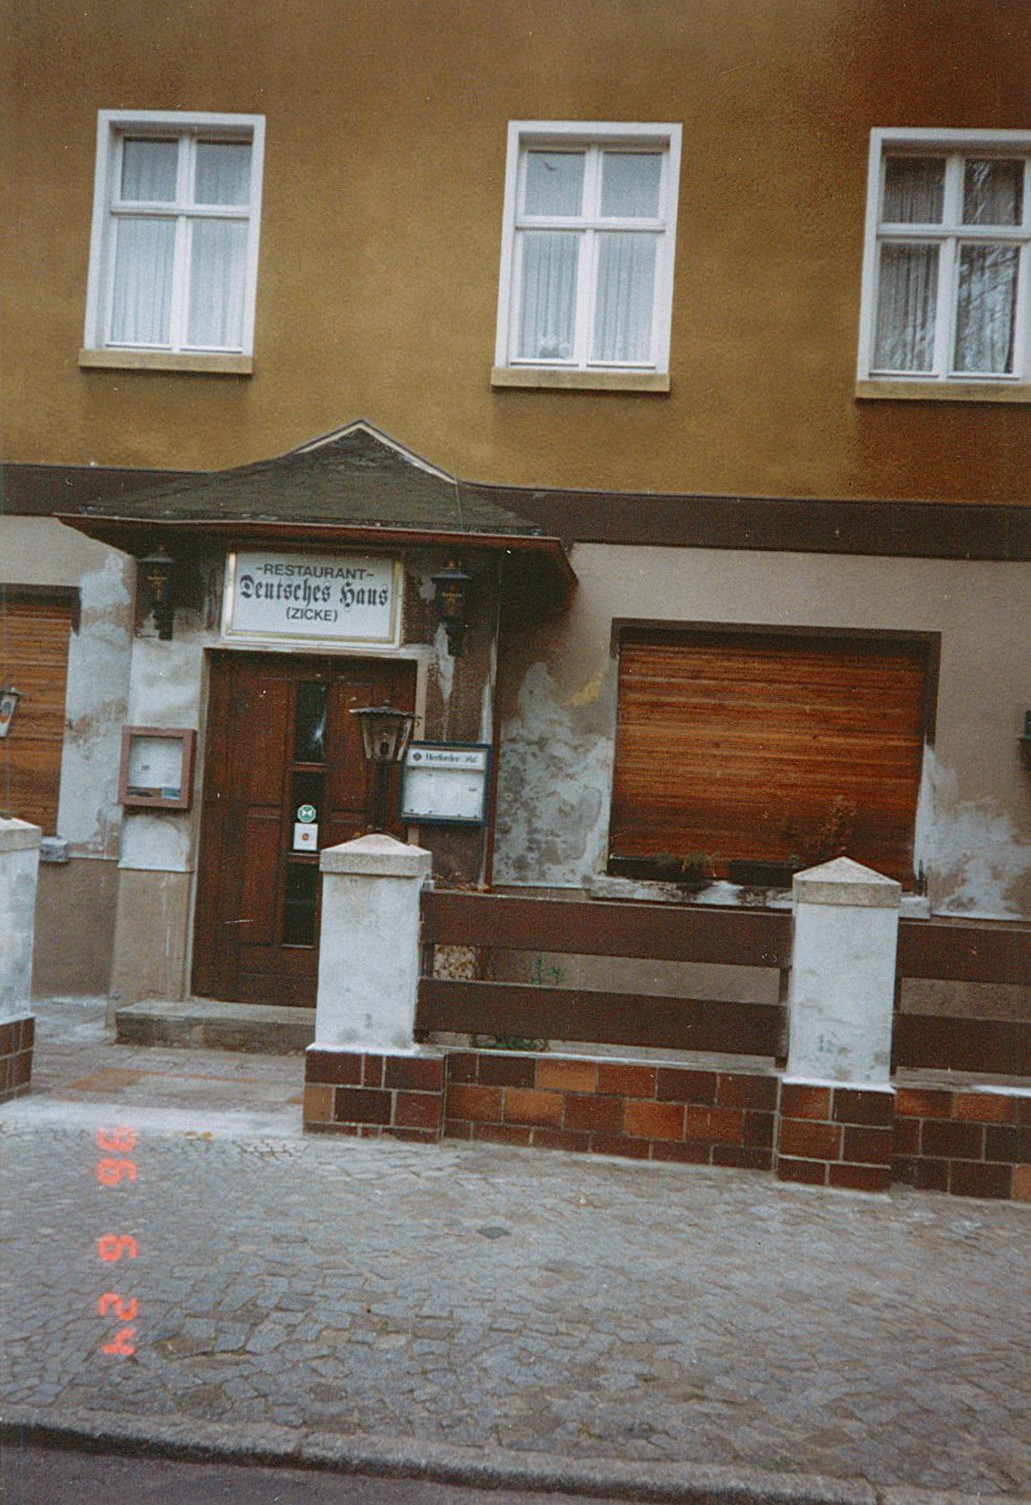 Stadtansicht Wolmirstedt - Restaurant "Deutsches Haus", Friedrich-Ebert-Straße, 24.06.1996 (Museum Wolmirstedt RR-F)